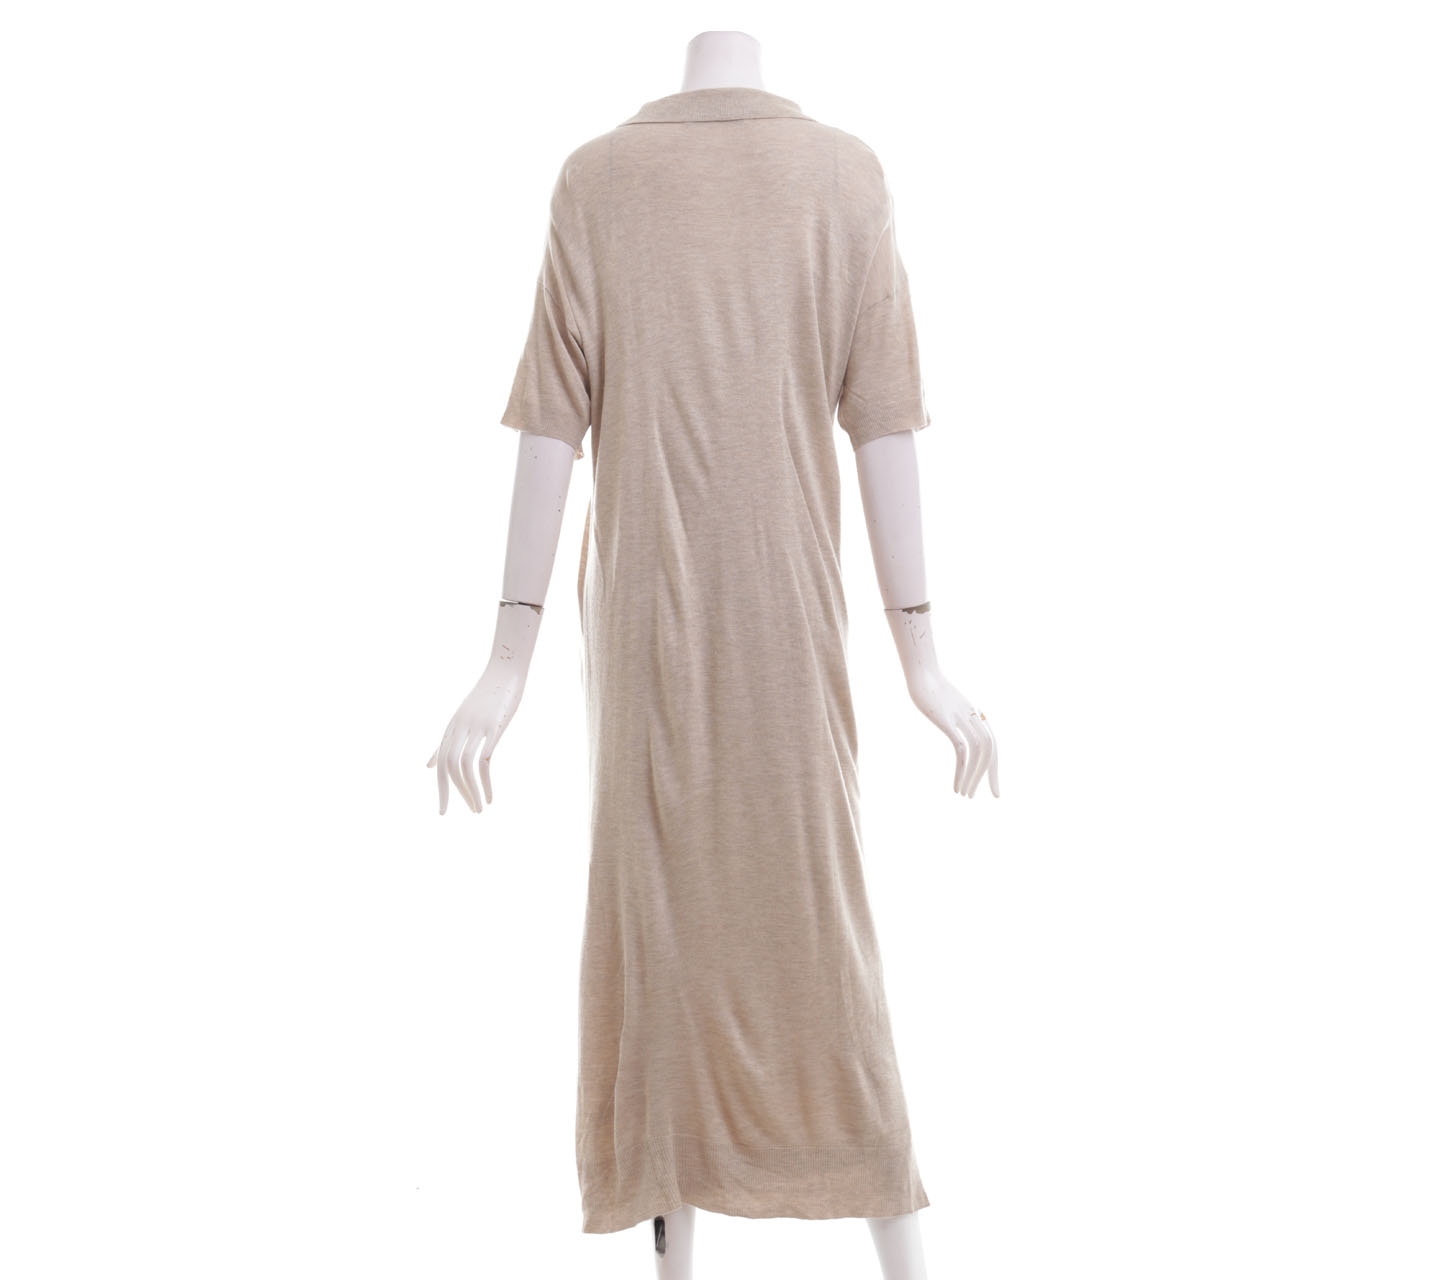 Zara Beige Knit Long Dress